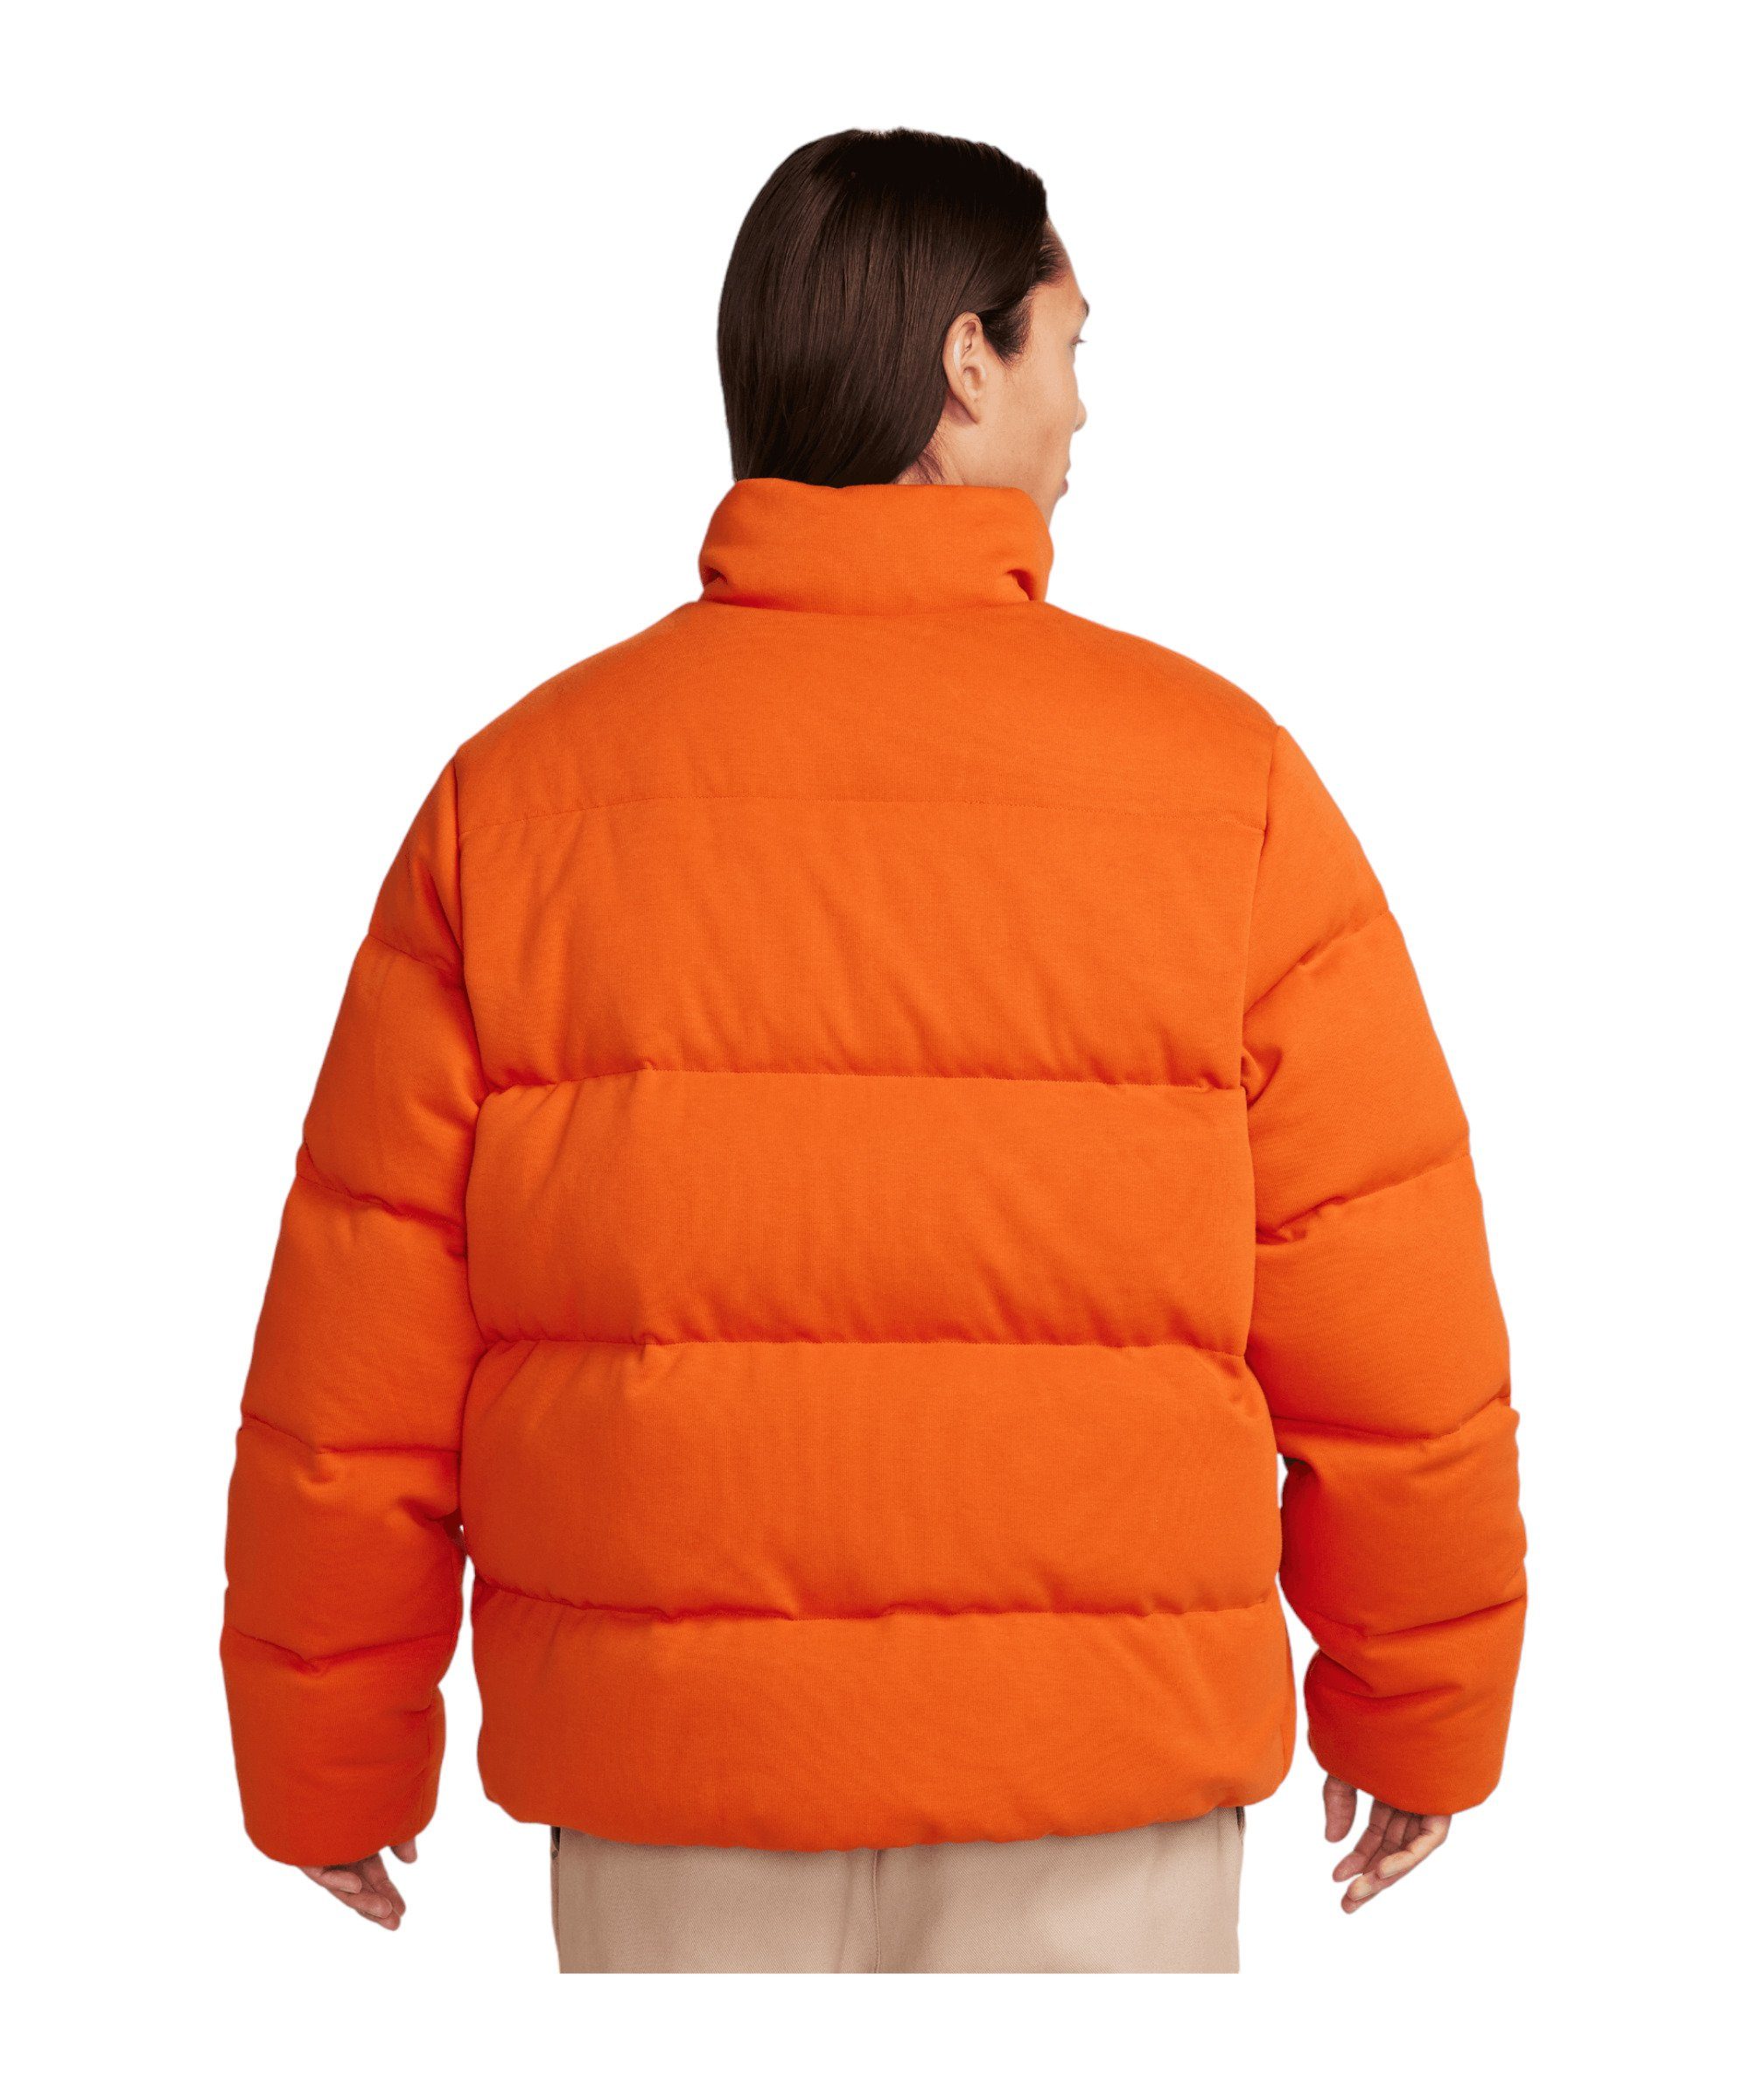 Tech Sweatjacke Nike Fleece Sportswear orangeschwarz Jacke